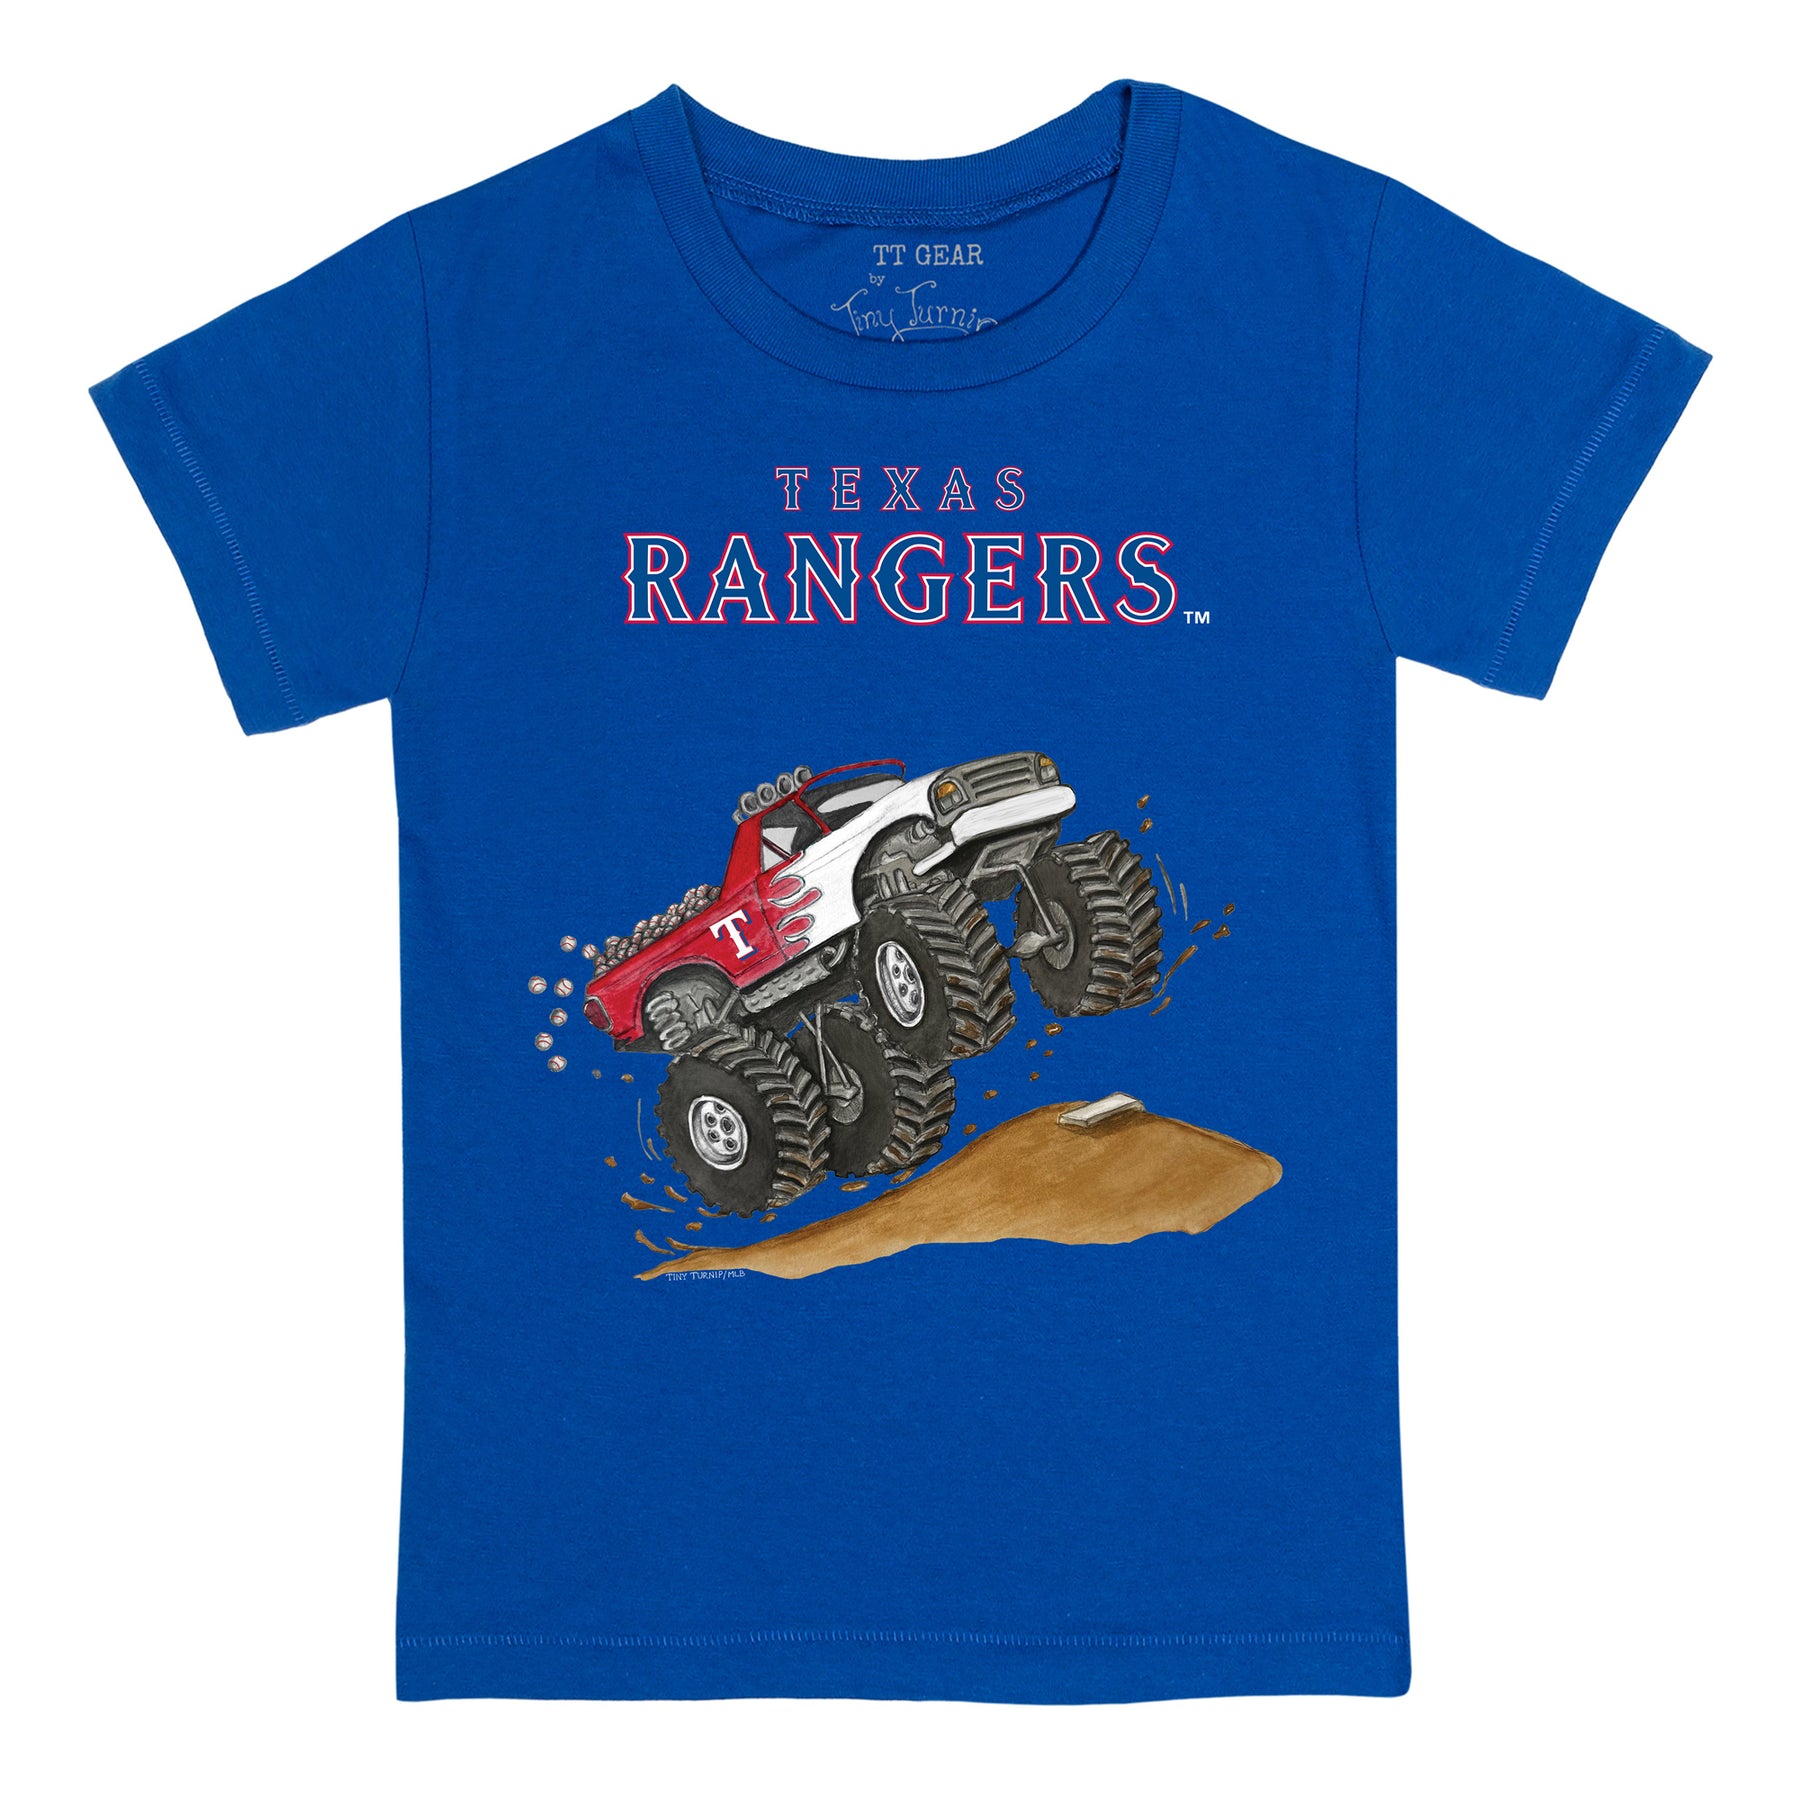 Texas Rangers Monster Truck Tee Shirt